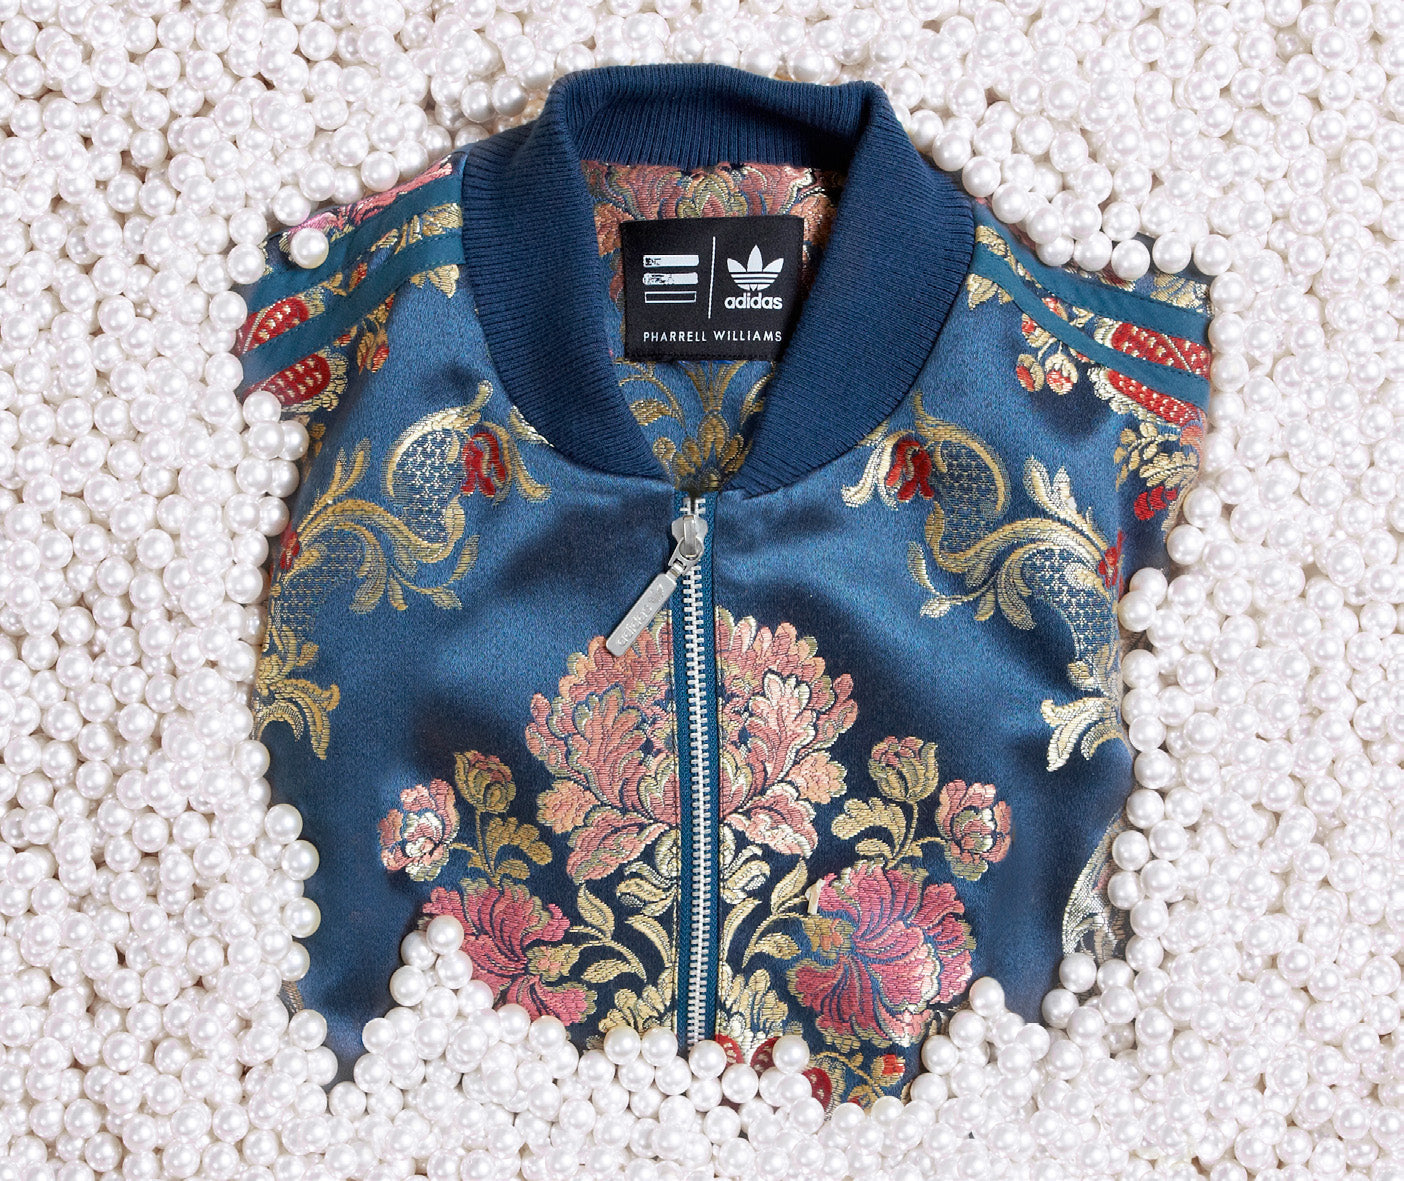 pharrell williams adidas jacket floral